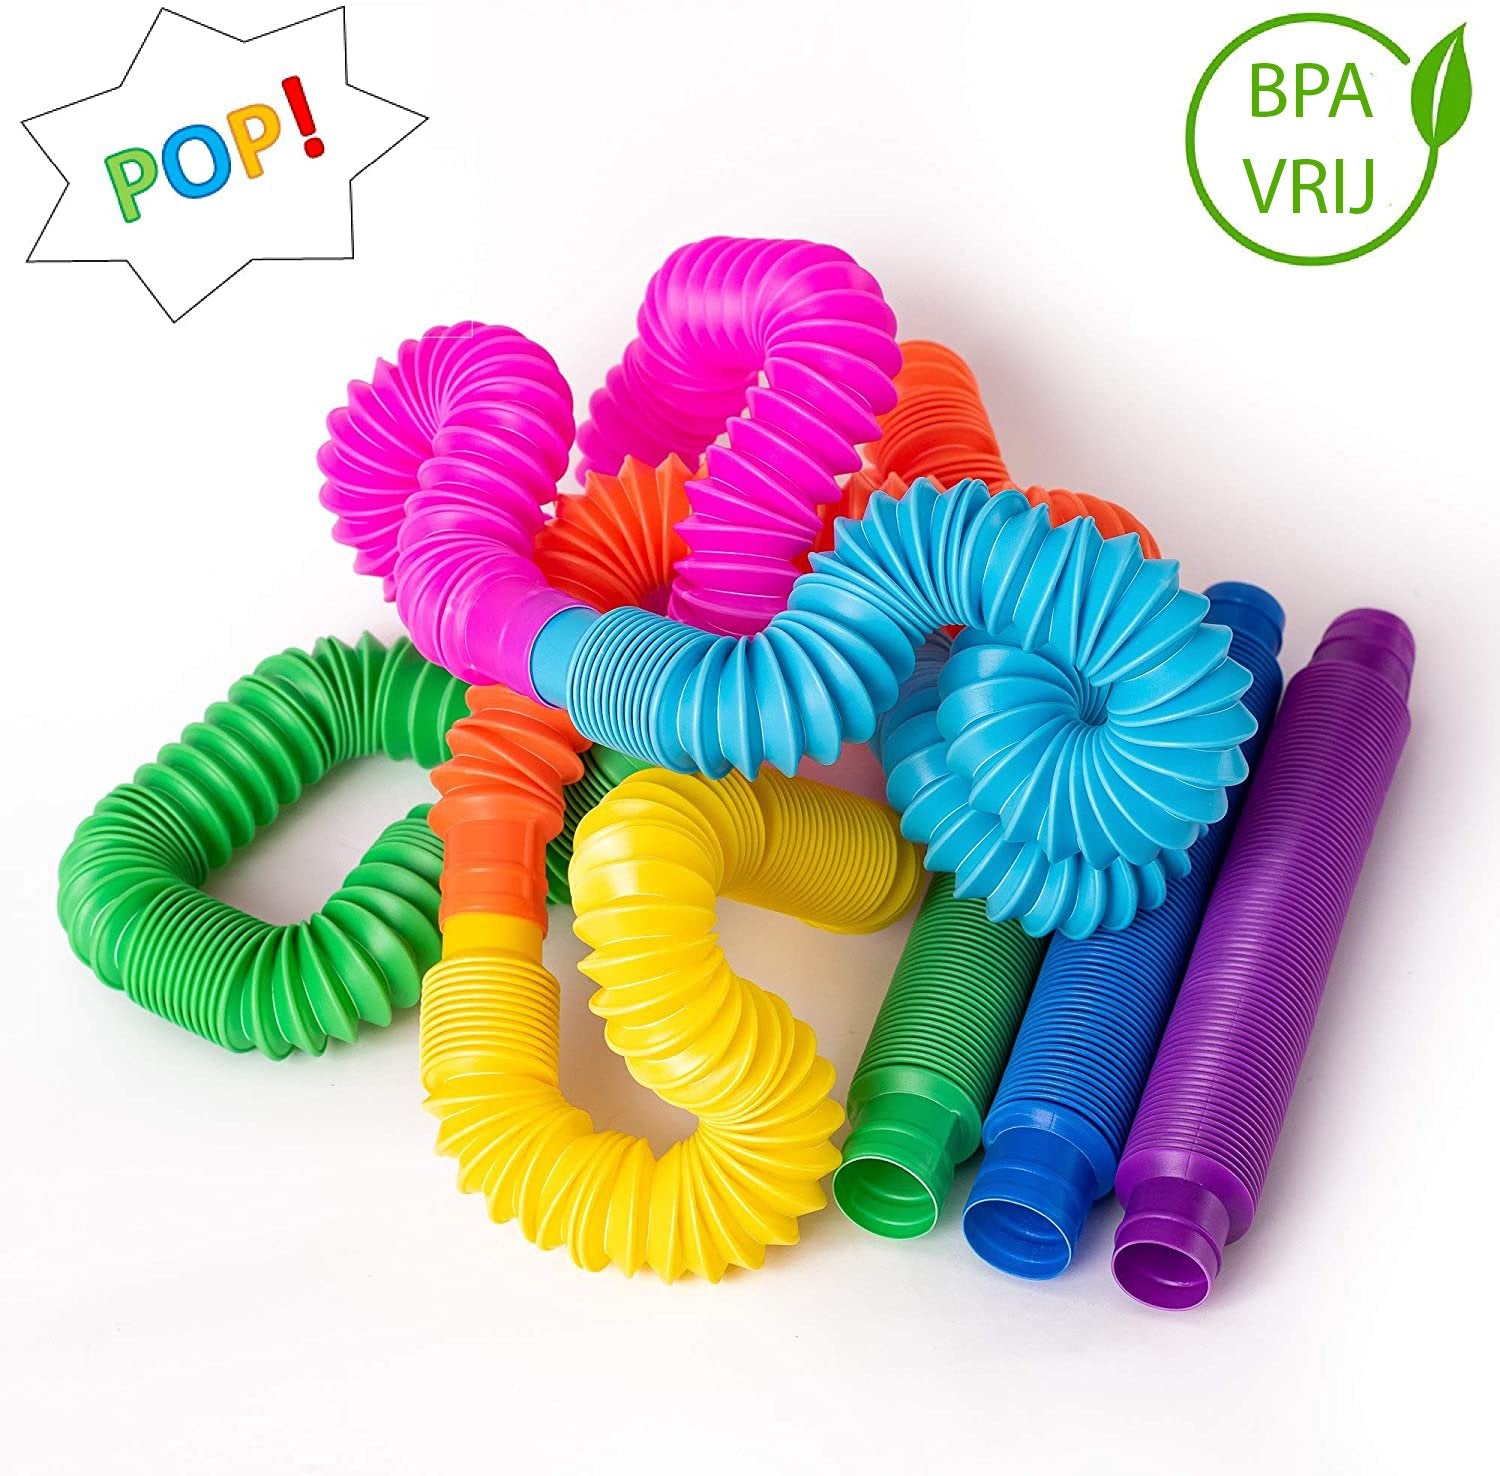 Pop Buisjes | Sensorisch speelgoed met veel mogelijkheden